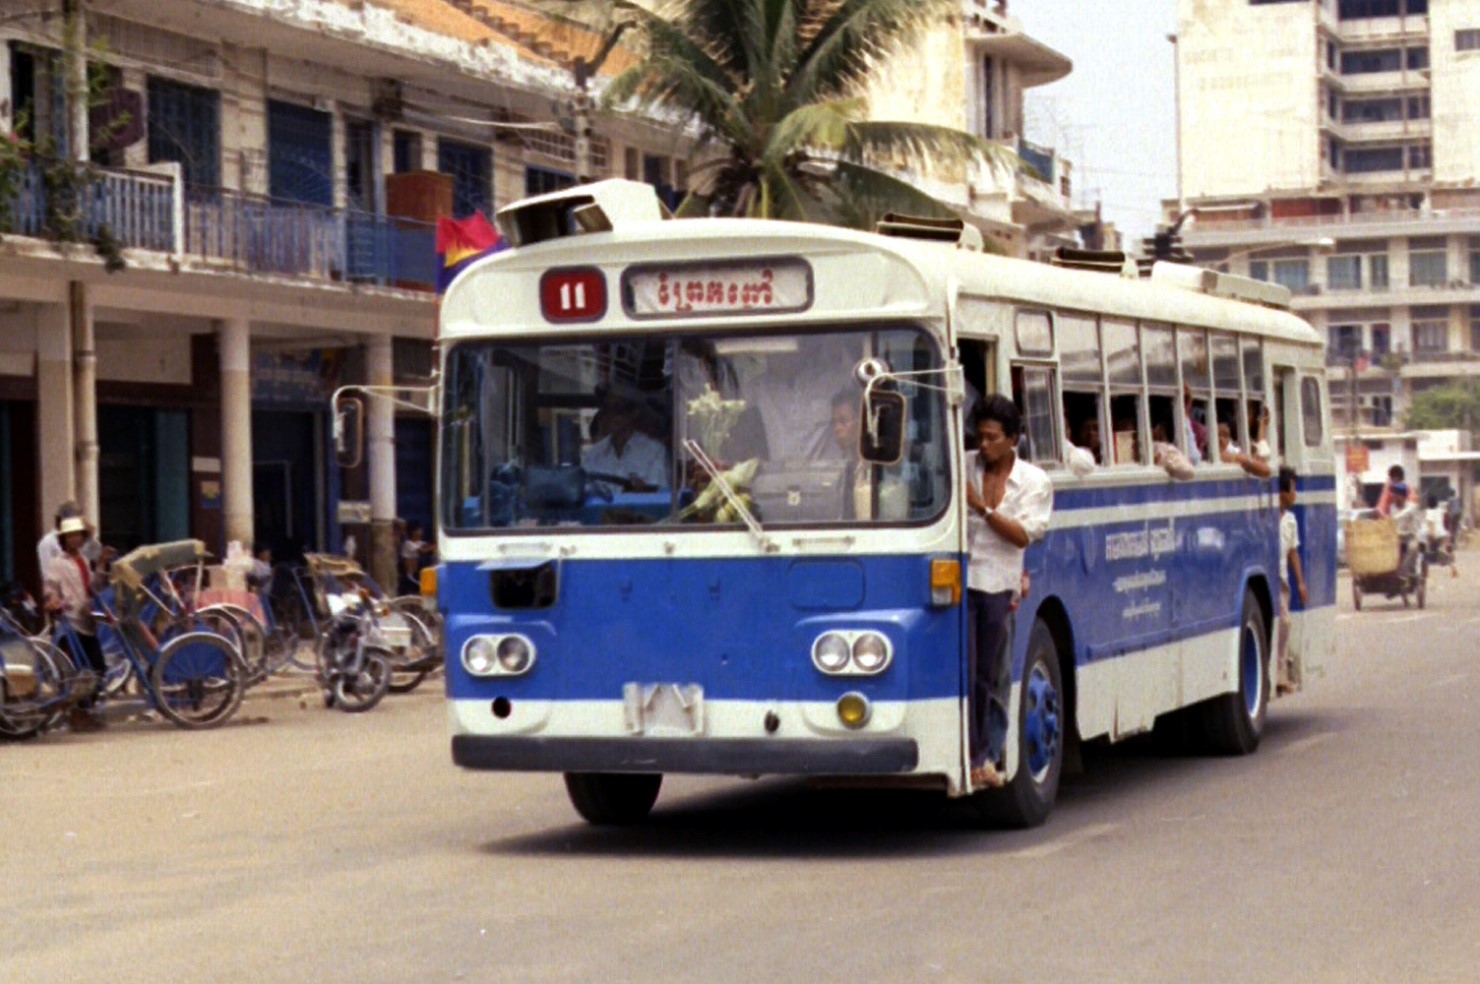 Bus in Cambodia